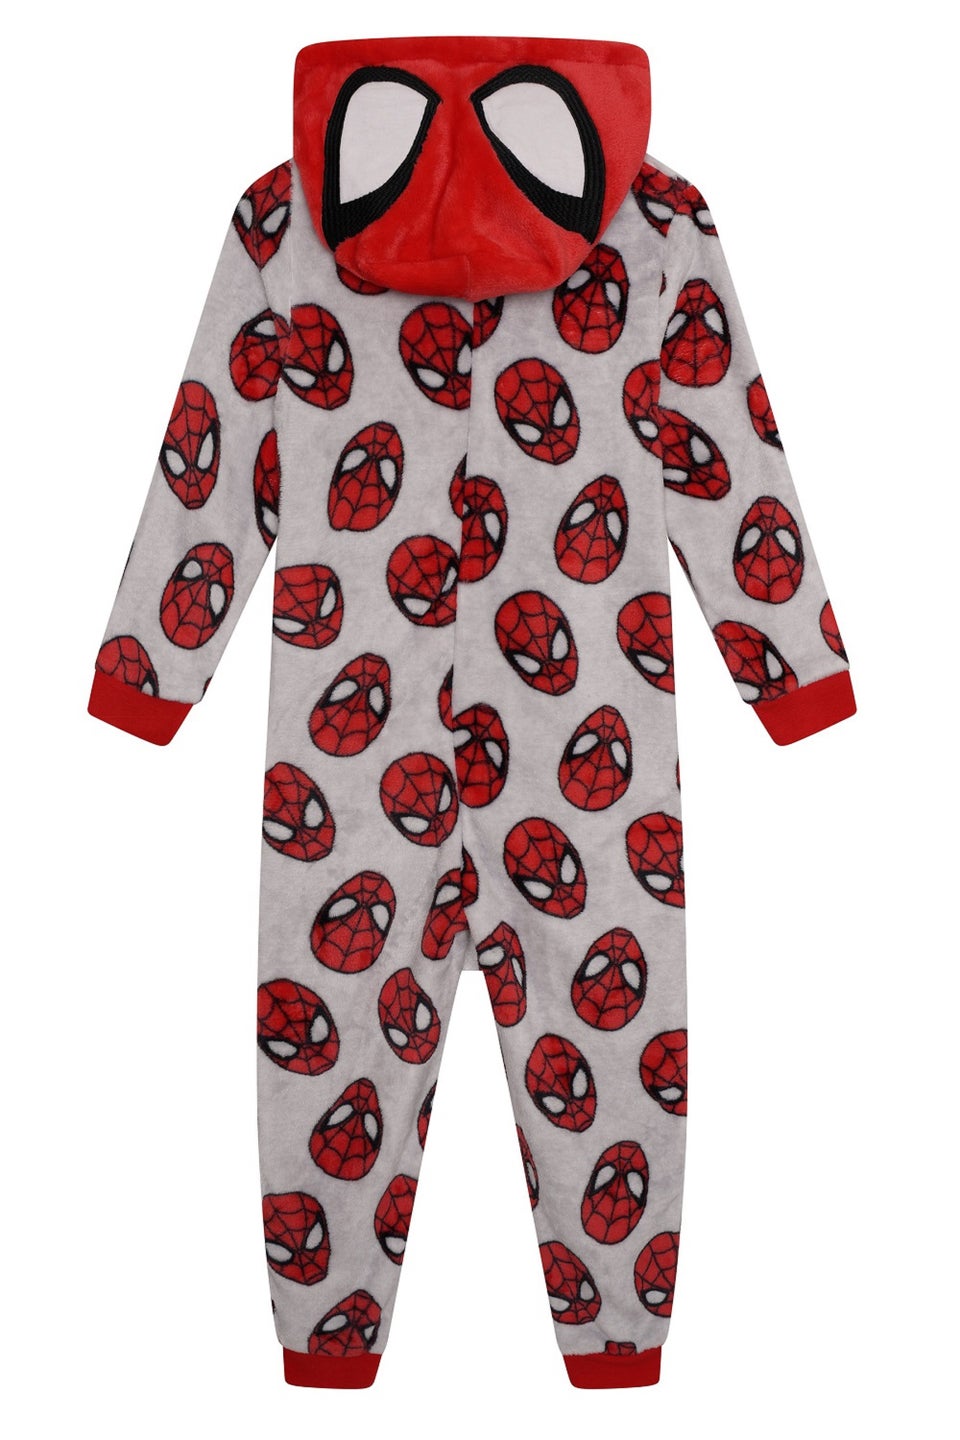 Brand Threads Kids' Spiderman Onesie